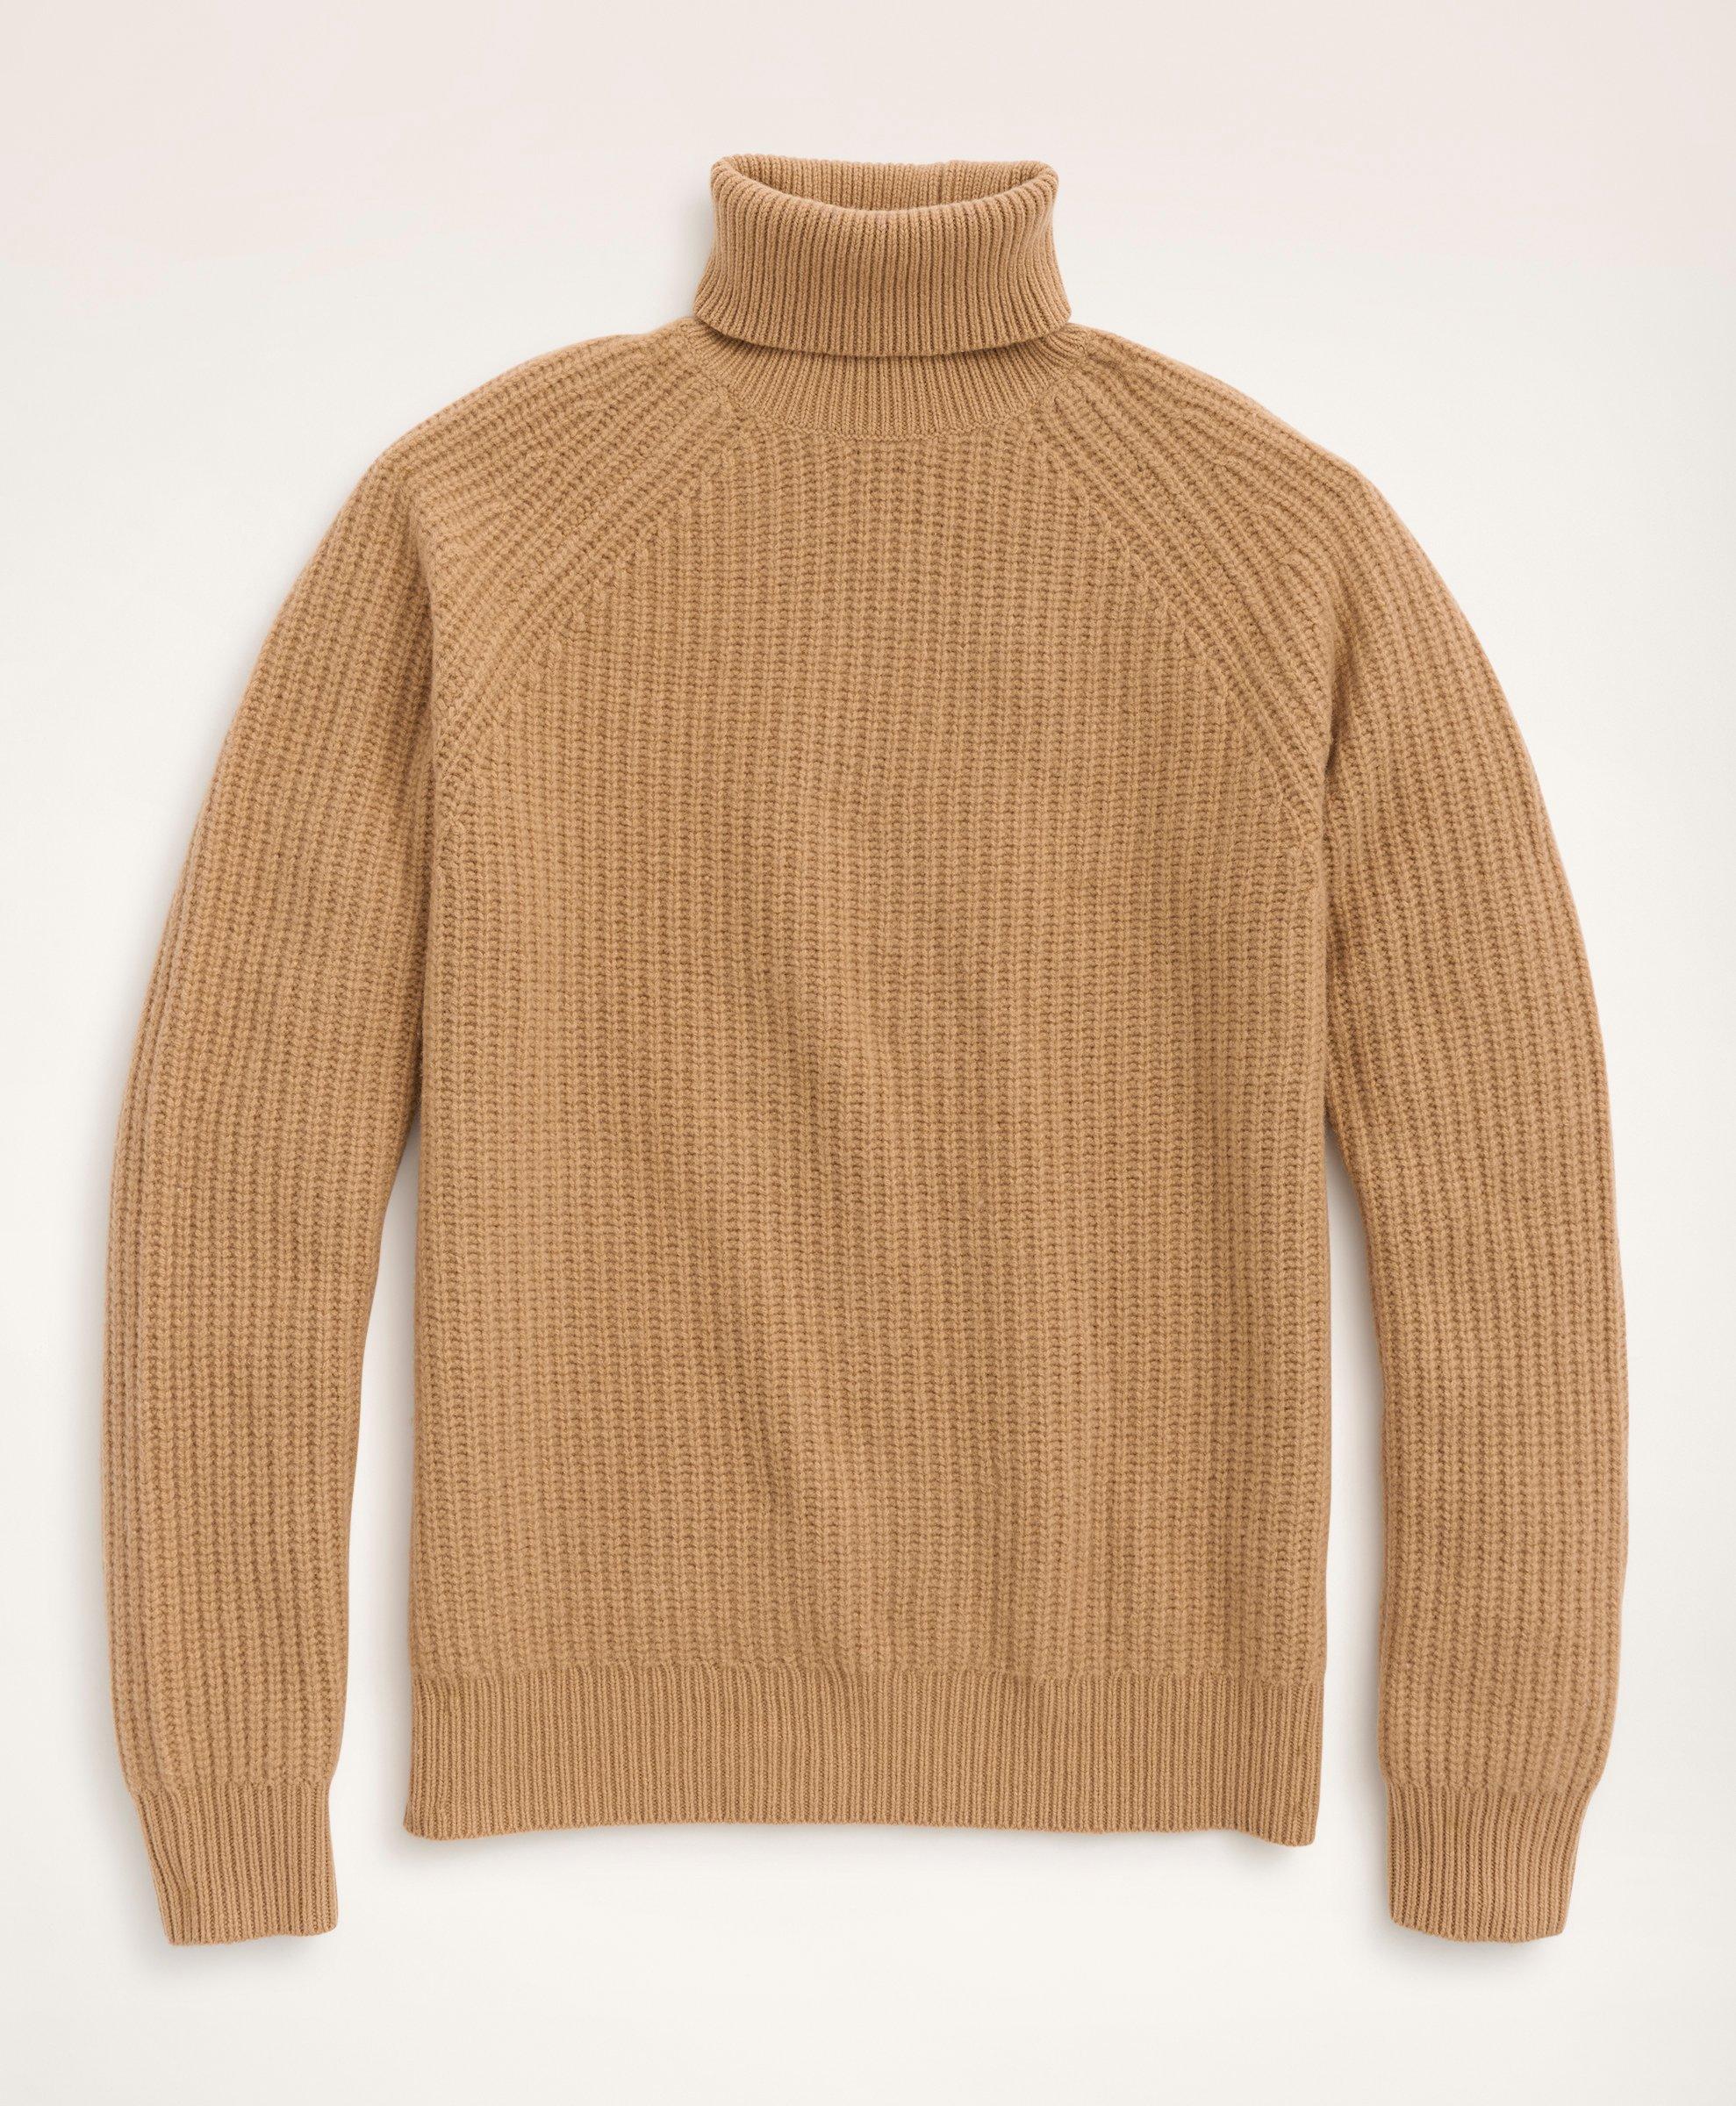 Wool-Cashmere English Rib Sweater, image 1